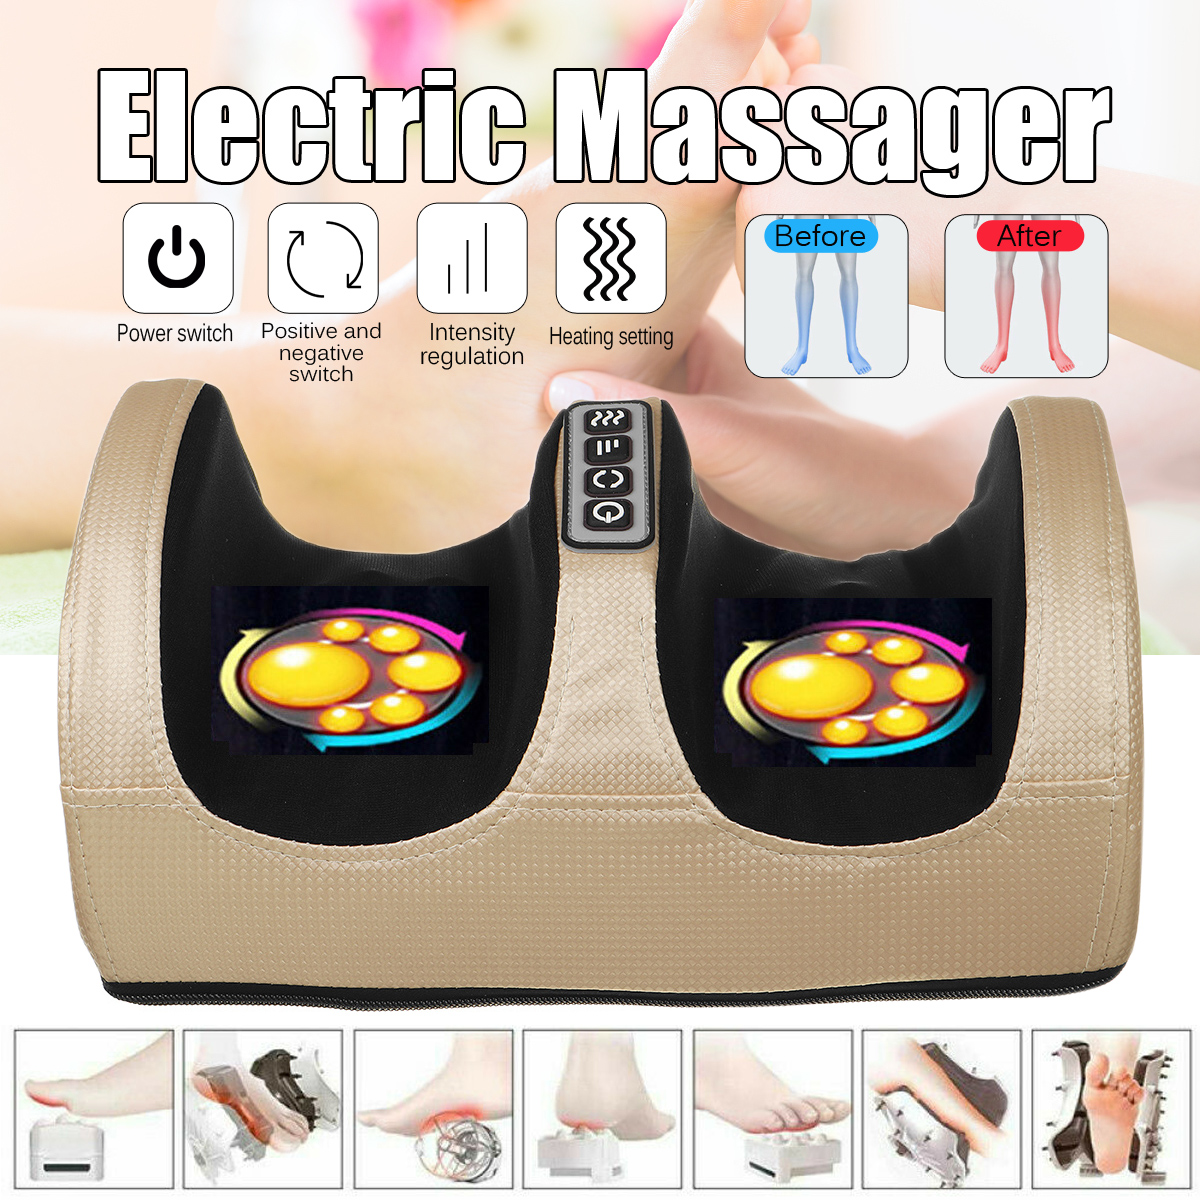 Electric-Foot-Massager-Calf-Leg-Massage-Heated-Shiatsu-Kneading-Rolling-Machine-1786905-1